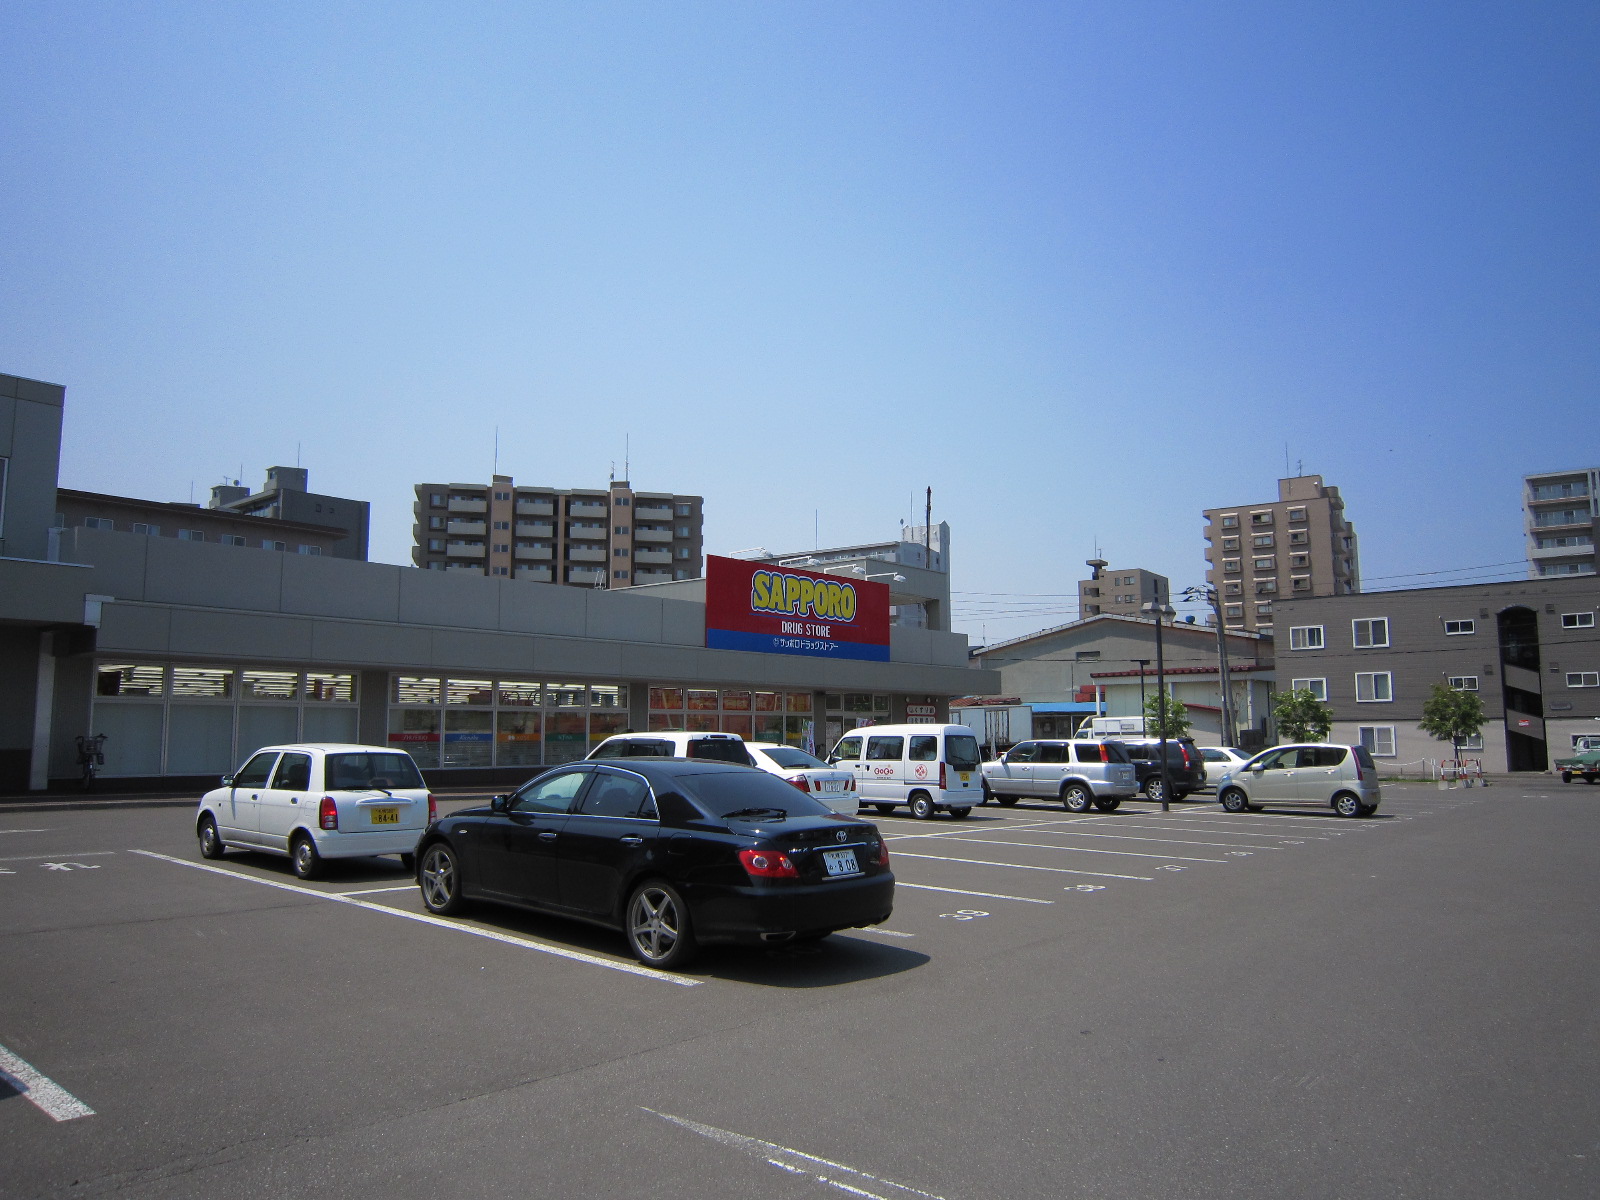 Dorakkusutoa. Sapporo drugstores Higashisapporo shop 740m until (drugstore)